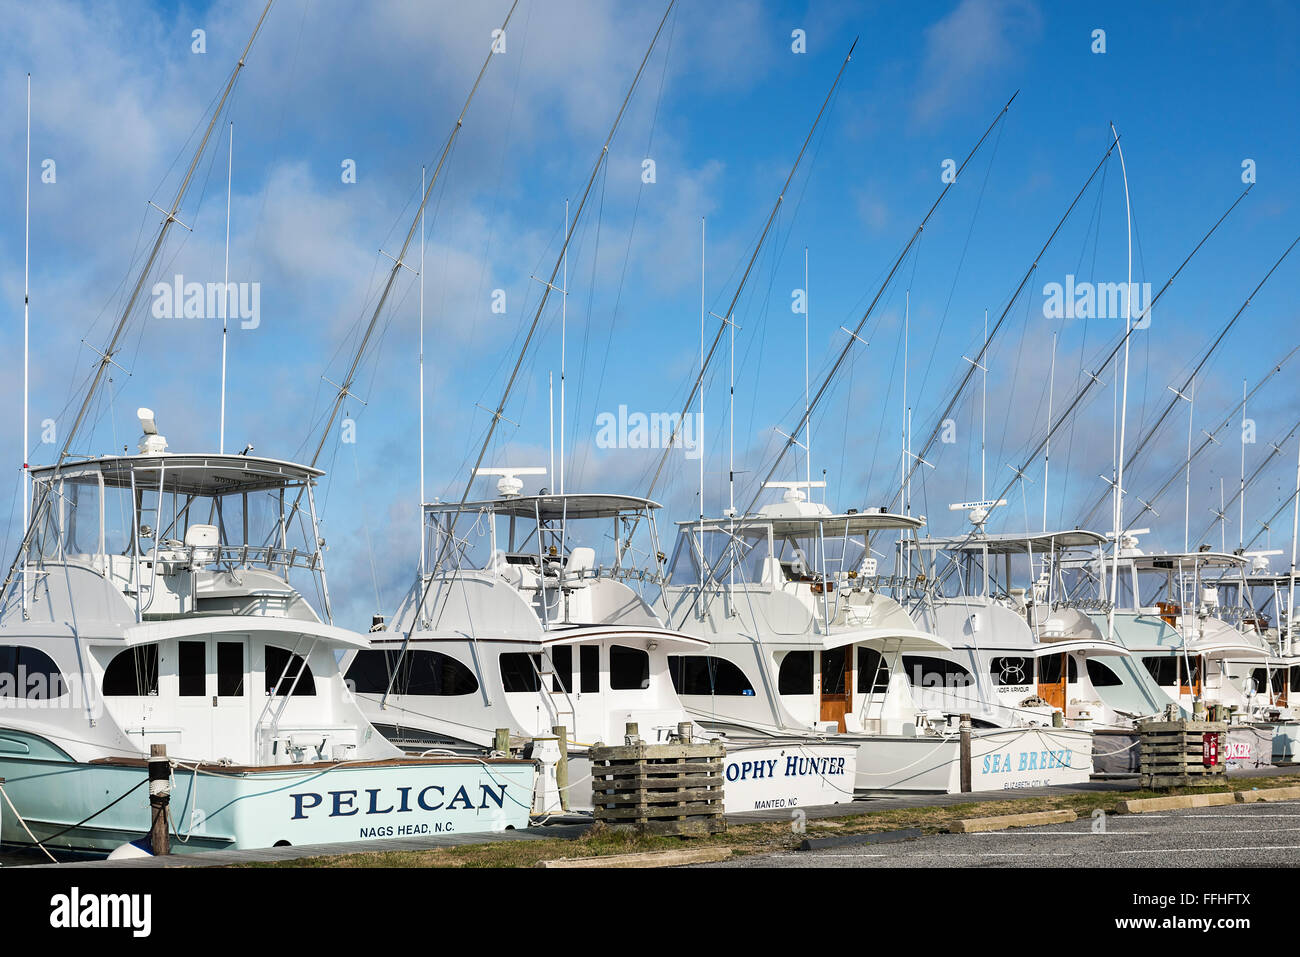 Le plaisir d'accueil de bateaux de pêche, de l'Oregon Inlet, Nags Head, Outer Banks, Caroline du Nord, États-Unis Banque D'Images